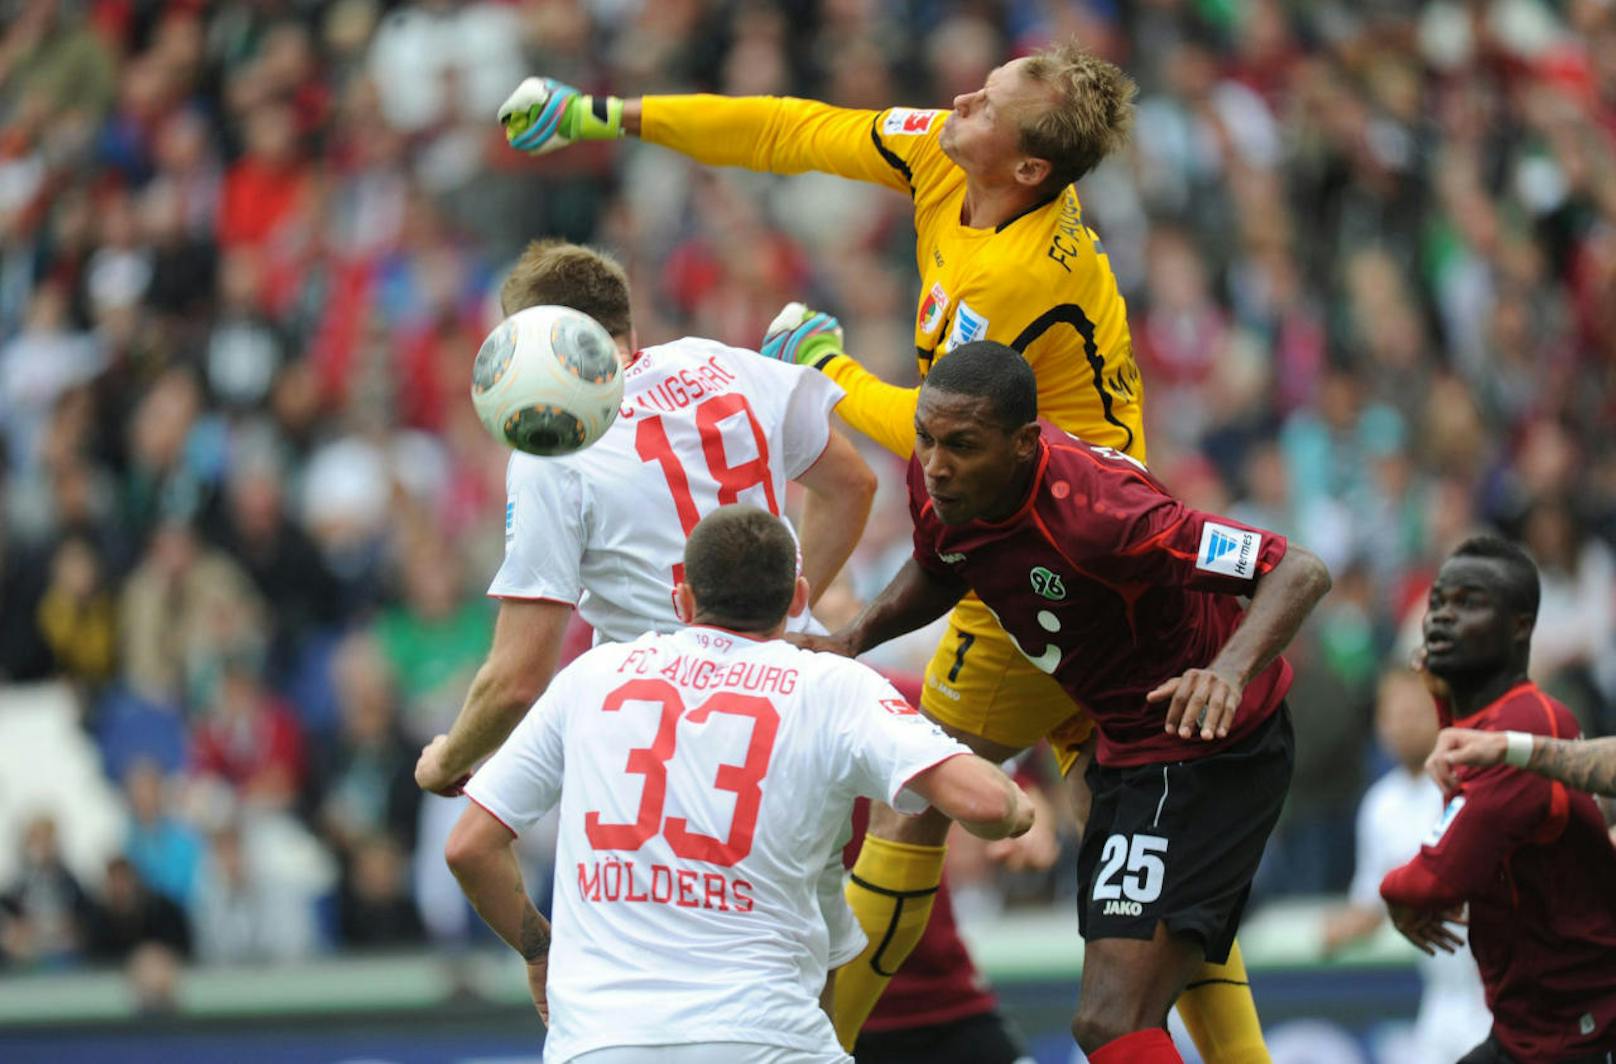 Und auch der Traum von der deutschen Bundesliga sollte sich noch erfüllen. 2012 klopfte Augsburg an - Manninger wechselte erneut den Klub.